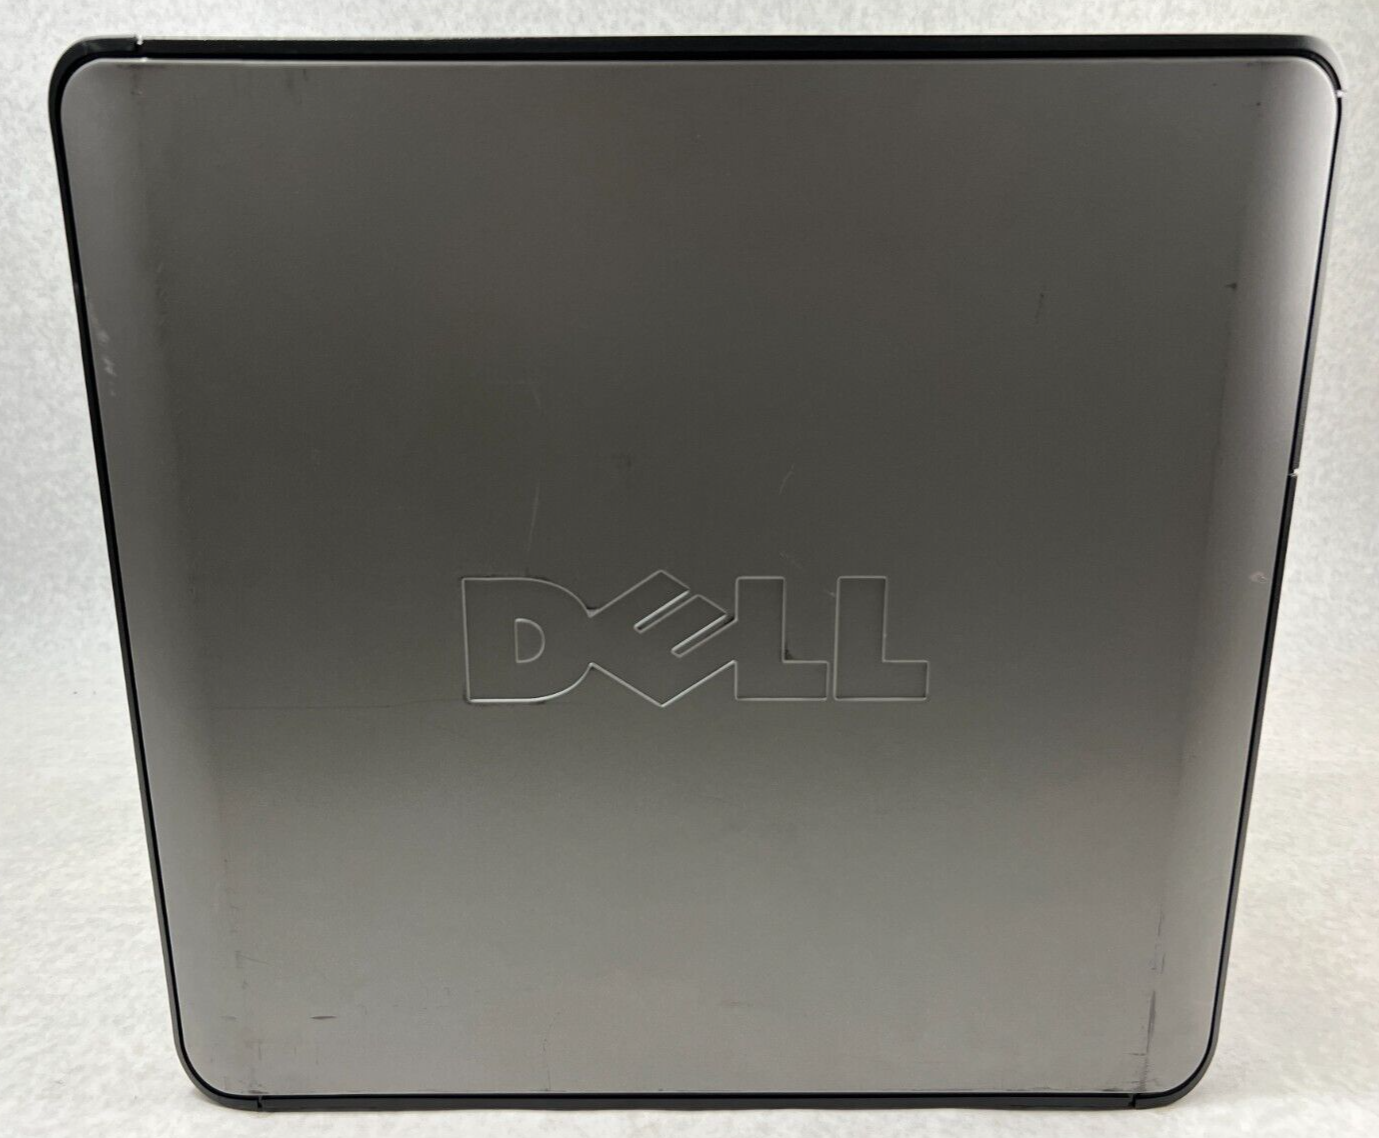 Dell Optiplex 360 MT Intel Celeron-450 2.20GHz 1GB RAM No HDD No OS